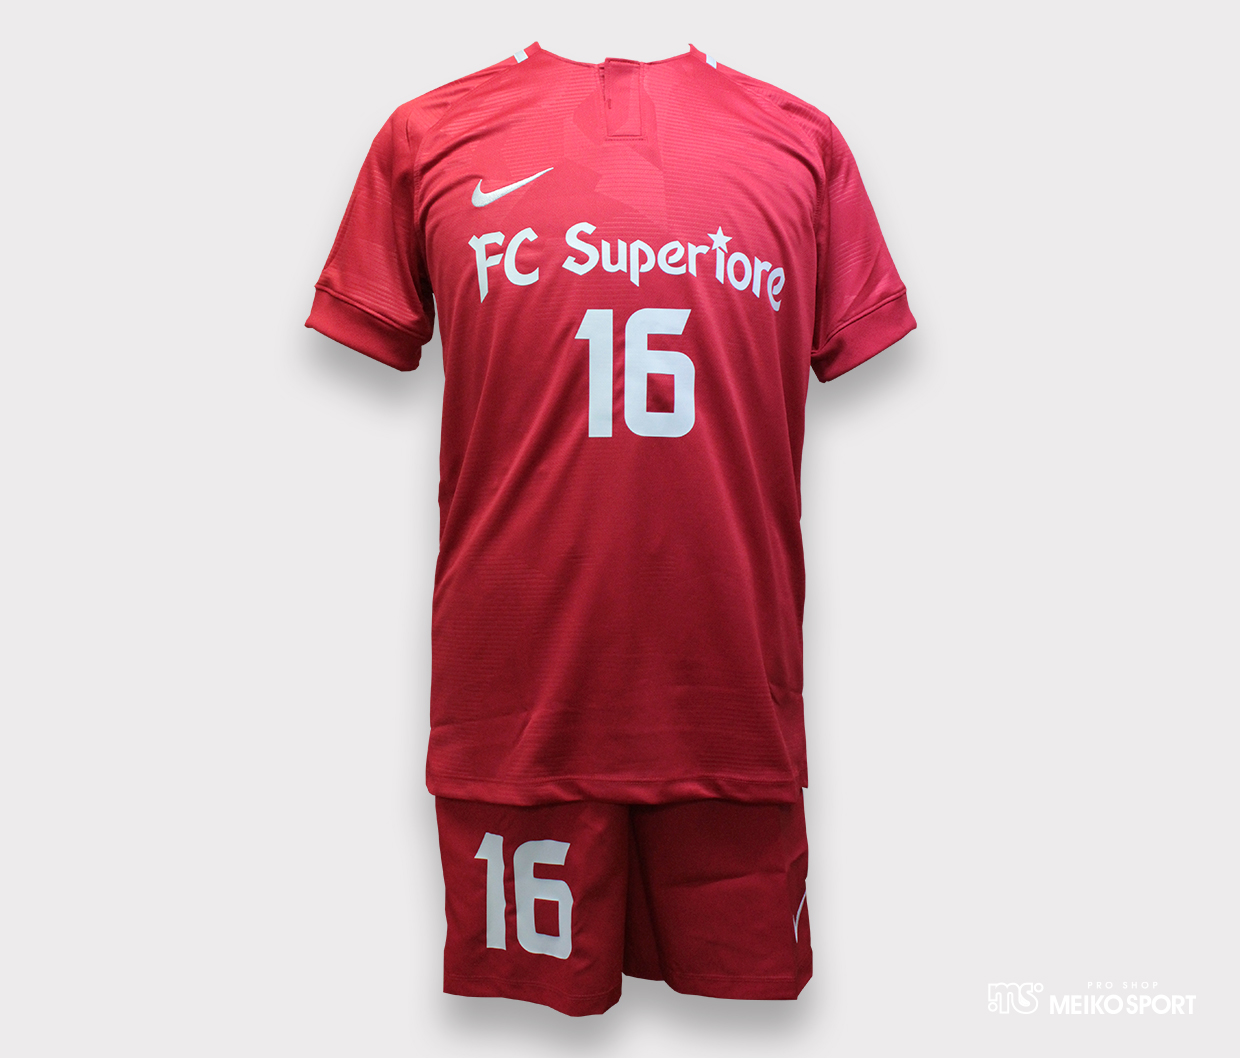 FC Superiore